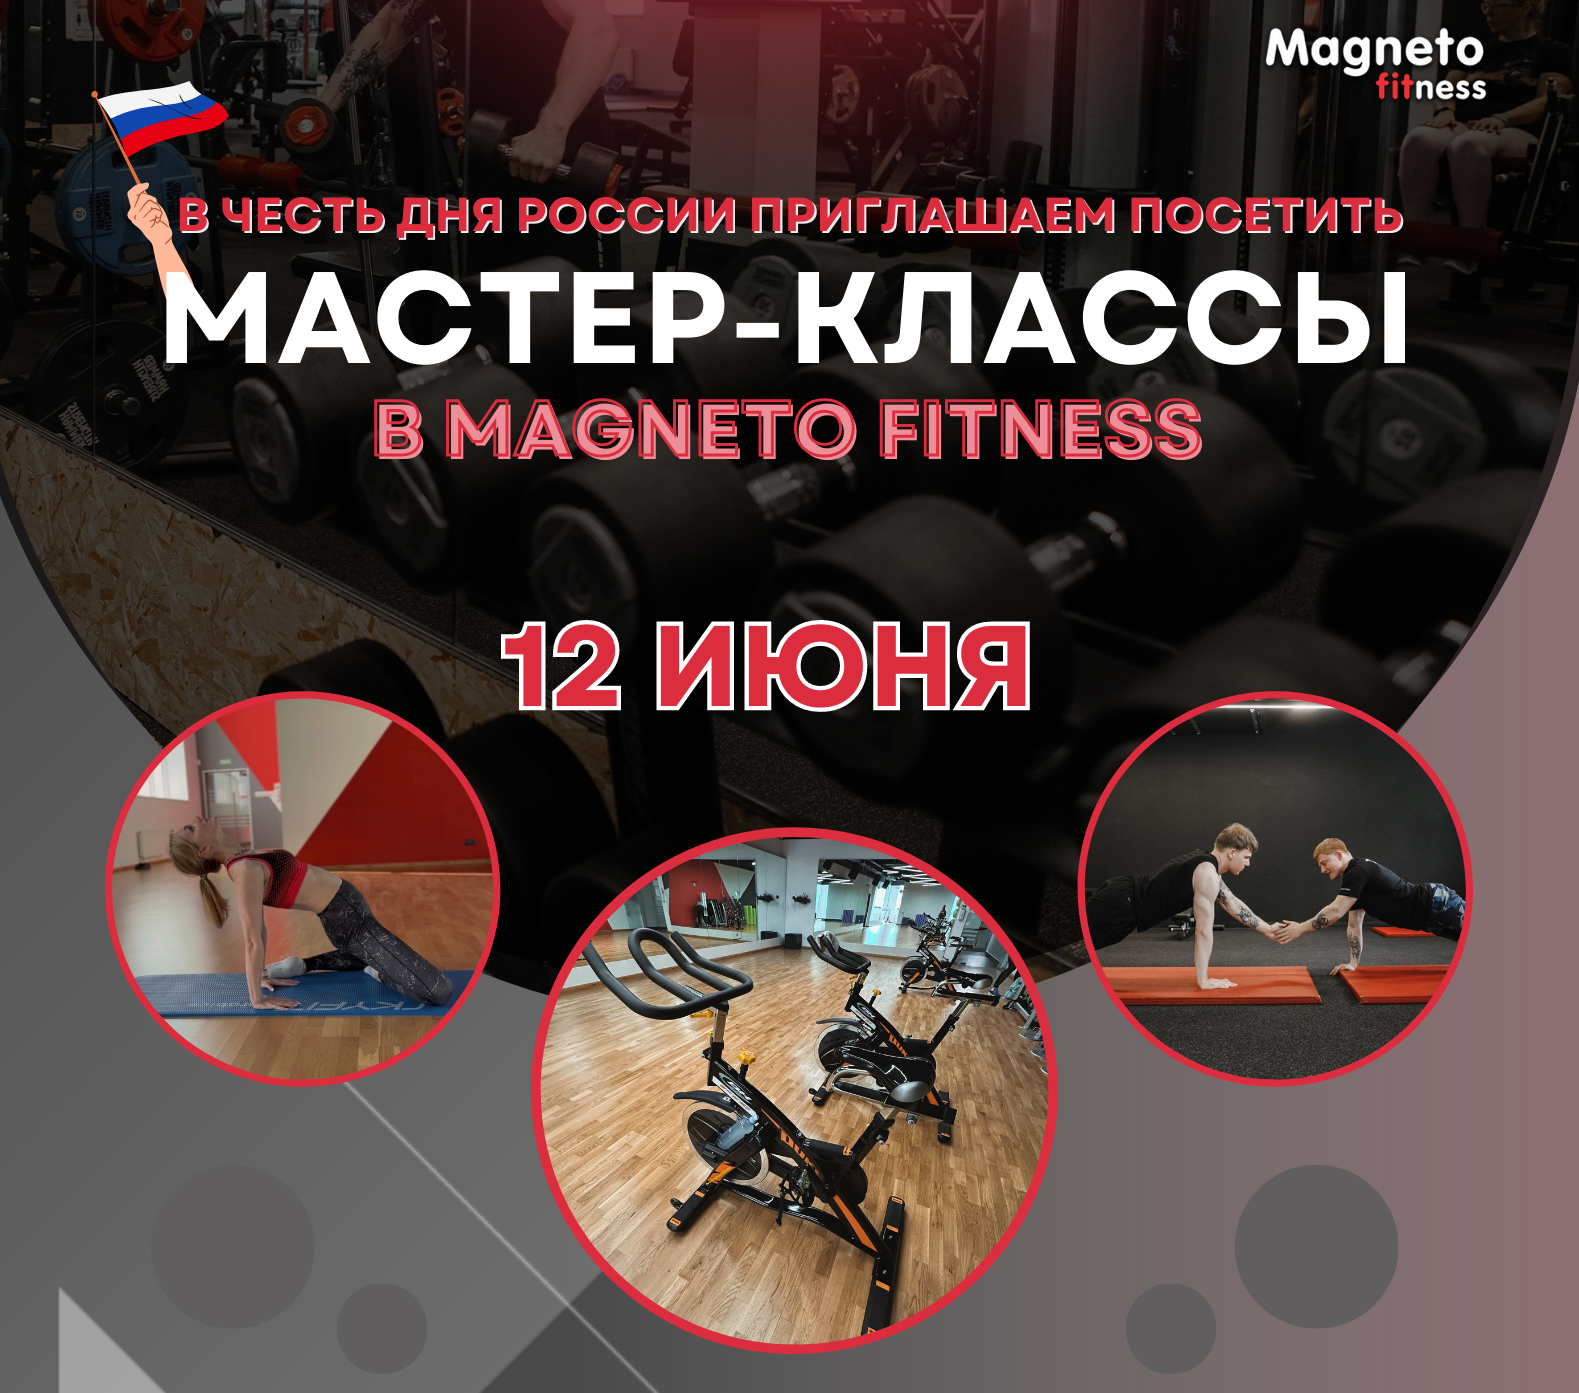 12 июня приглашаем всех на мастер классы в честь дня России - Magneto Fitness Марьино